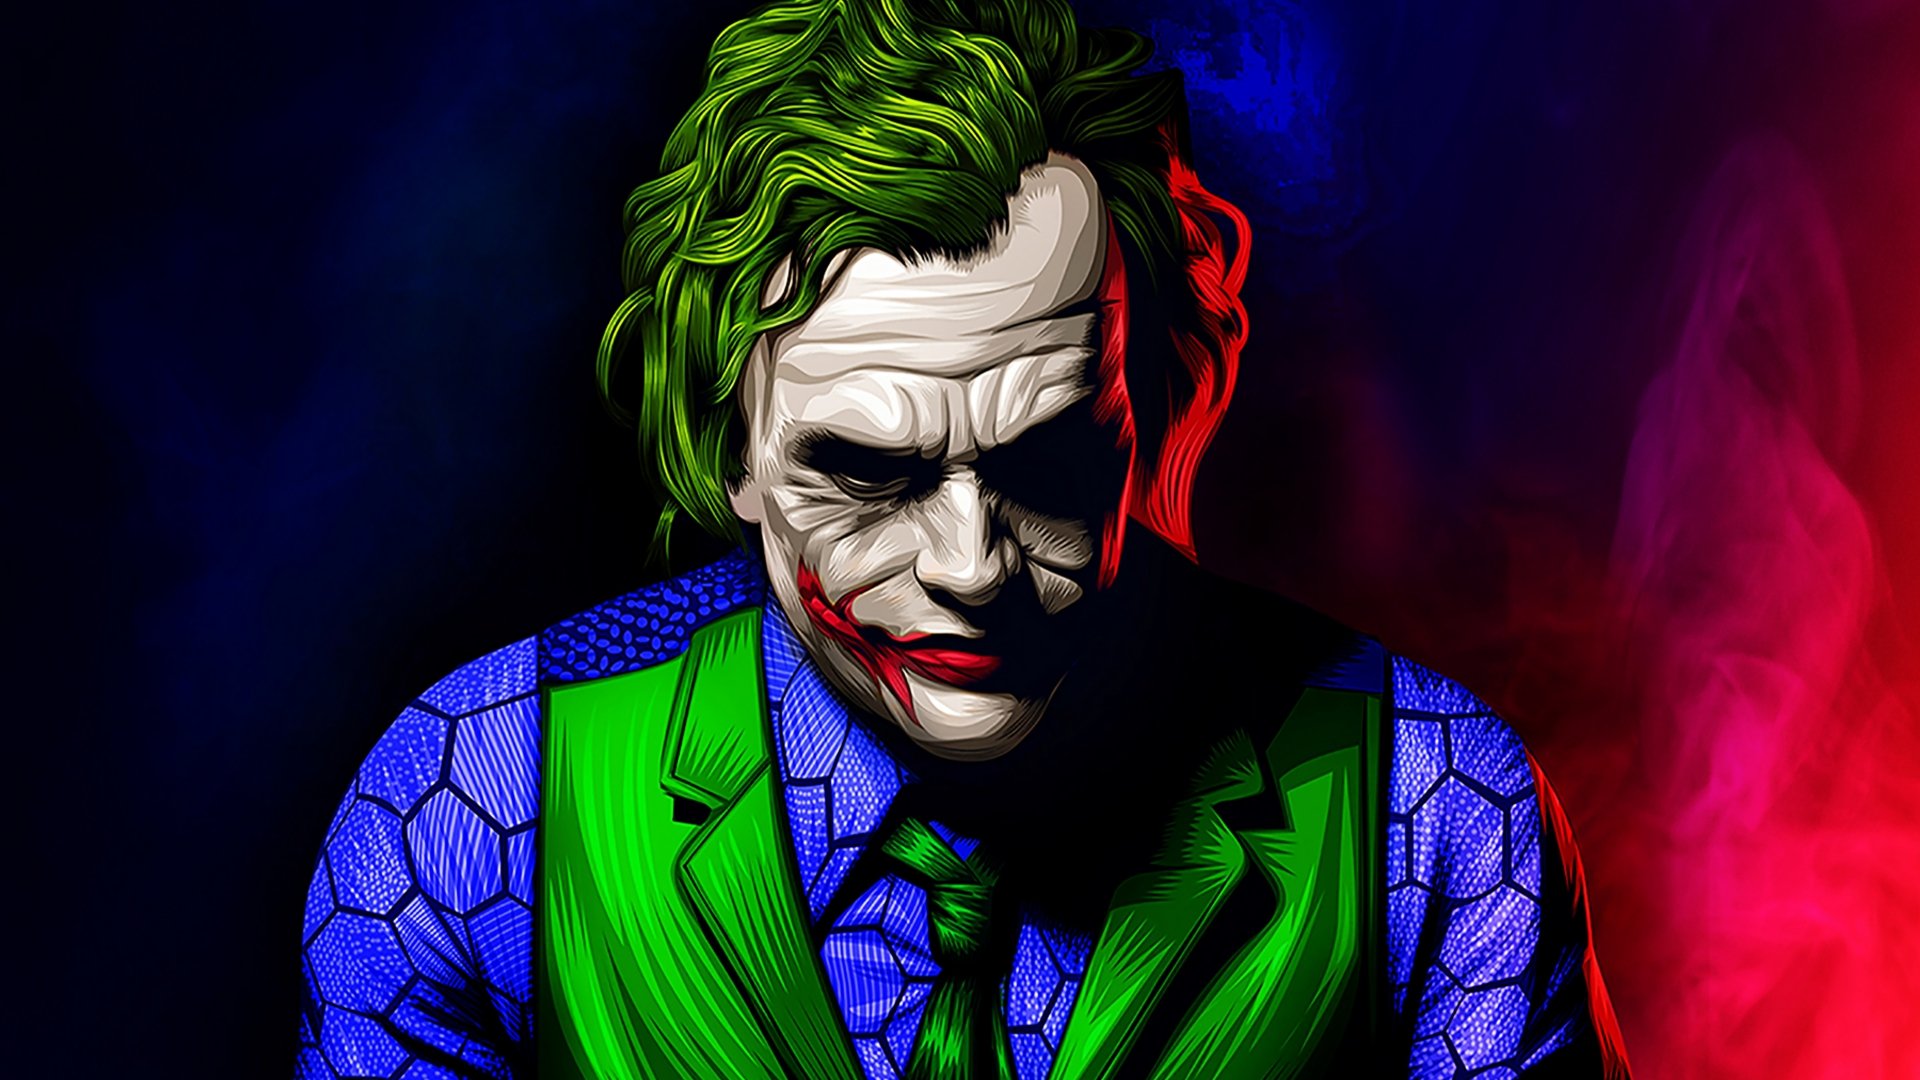 Joker Artwork Illustration Wallpaper 4k Ultra Hd Id 3810